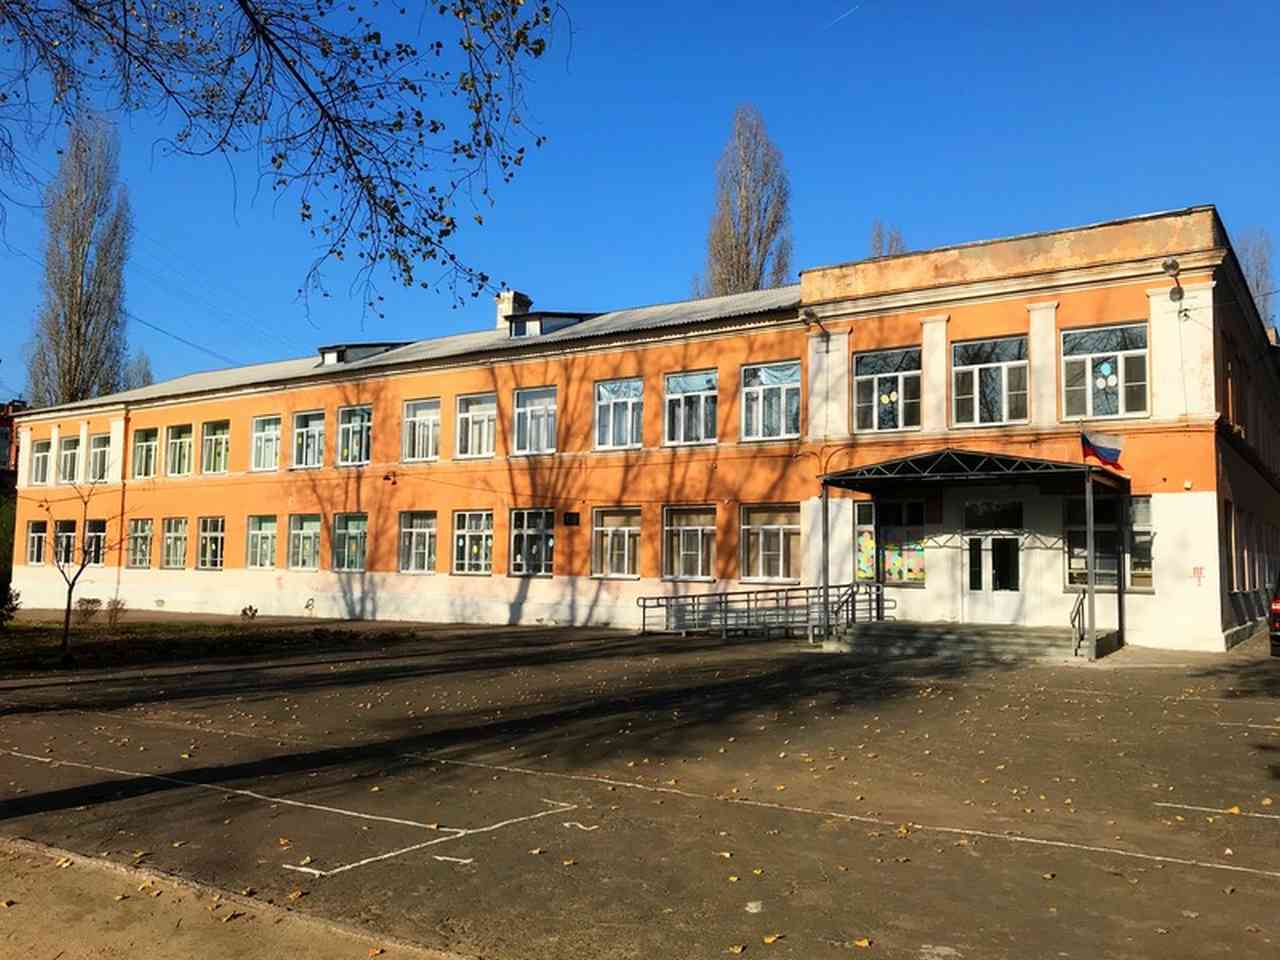 Информацию о рассылке угроз по школам прокомментировали в мэрии Воронежа